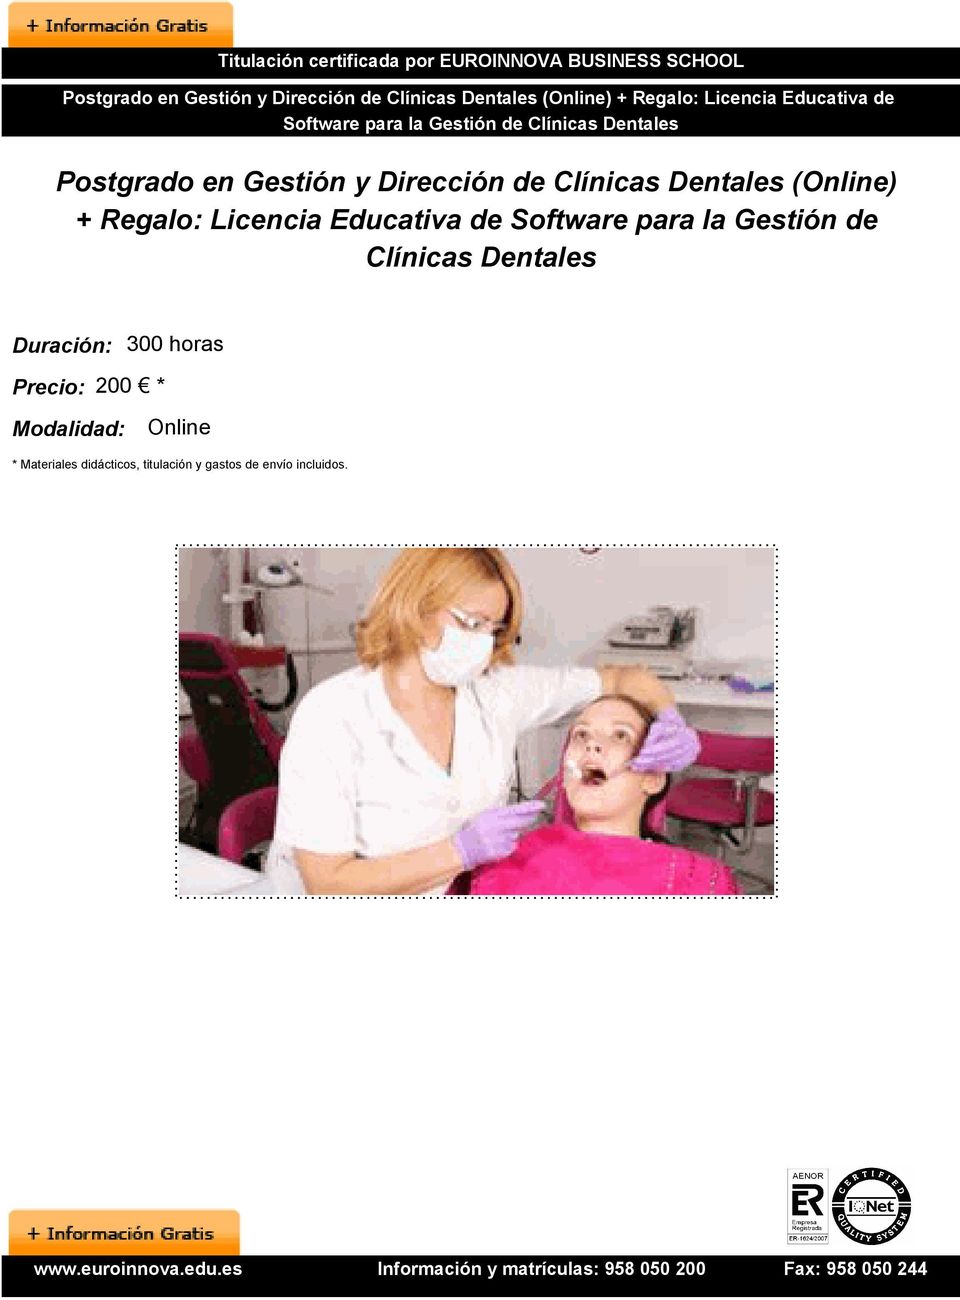 Dentales (Online) + Regalo: Licencia Educativa de Software para la Gestión de Clínicas Dentales